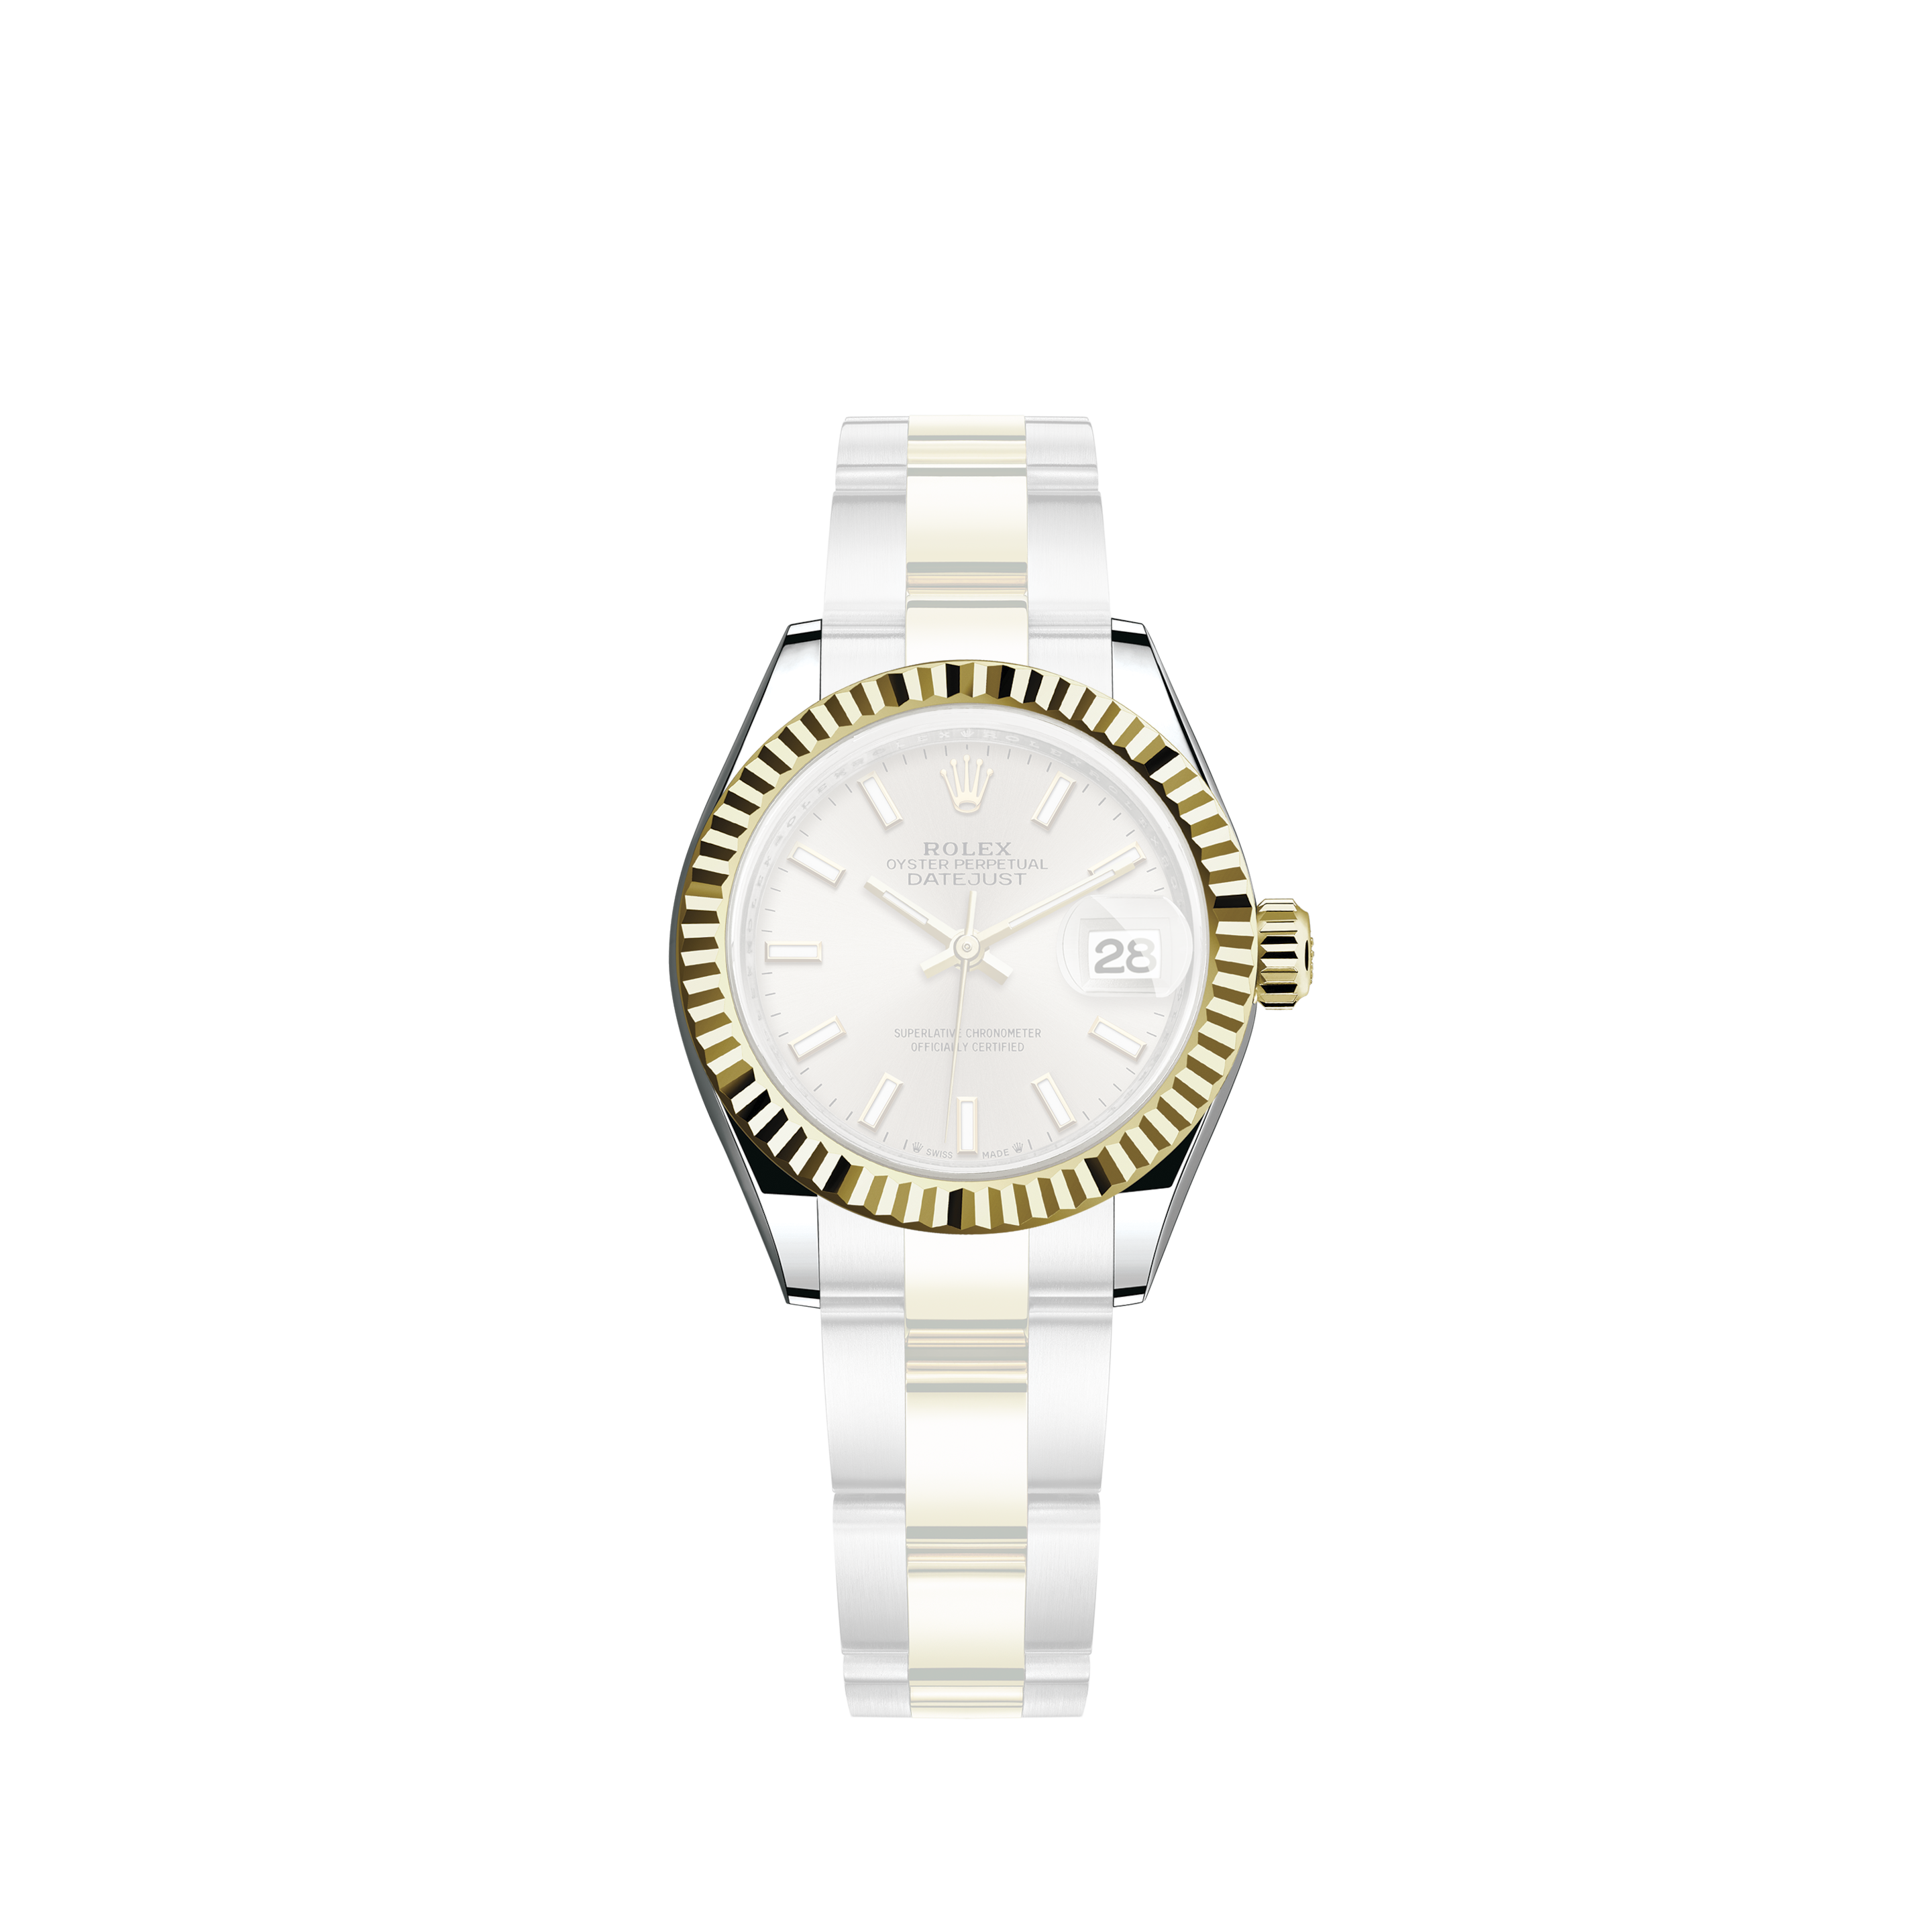 Rolex Rolex Rolex Submariner Date 126610LV Black Dial New Watch Men's Watch